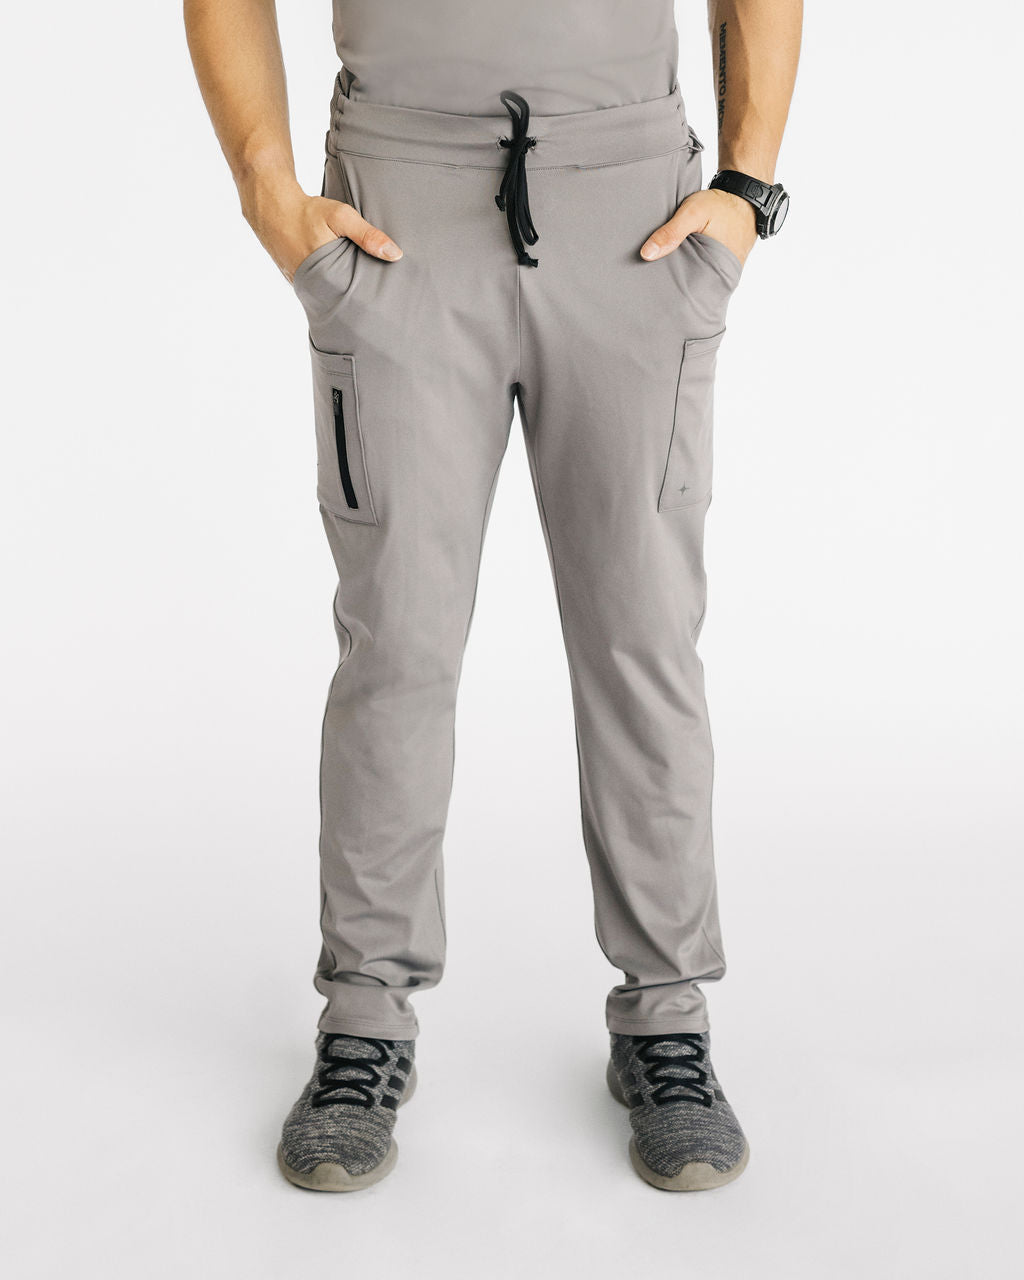 grey scrub pants for men